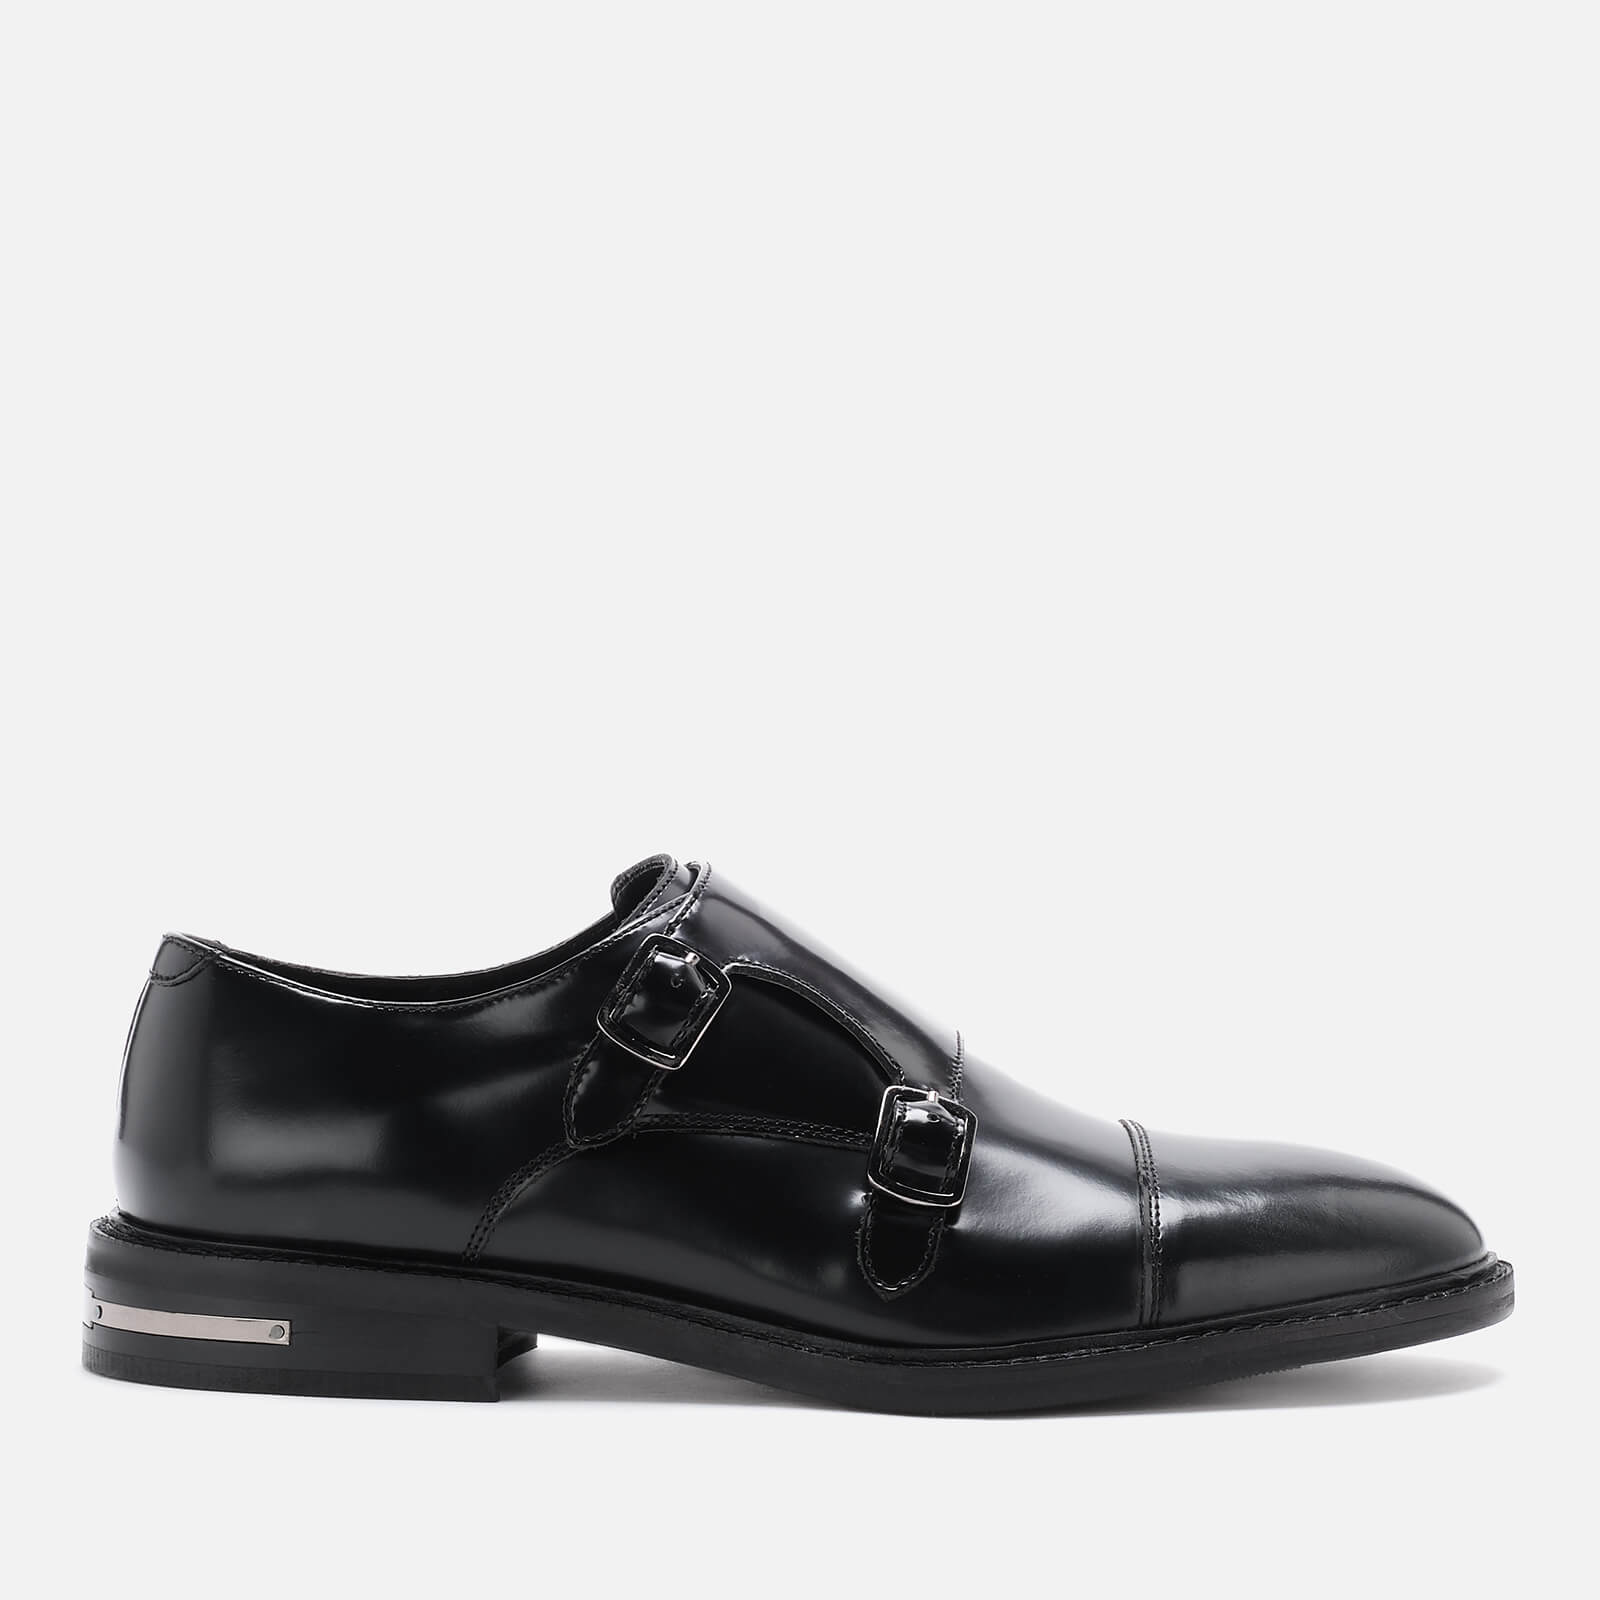 Walk London Men's Oliver Leather Monk Shoes - Black - UK 7